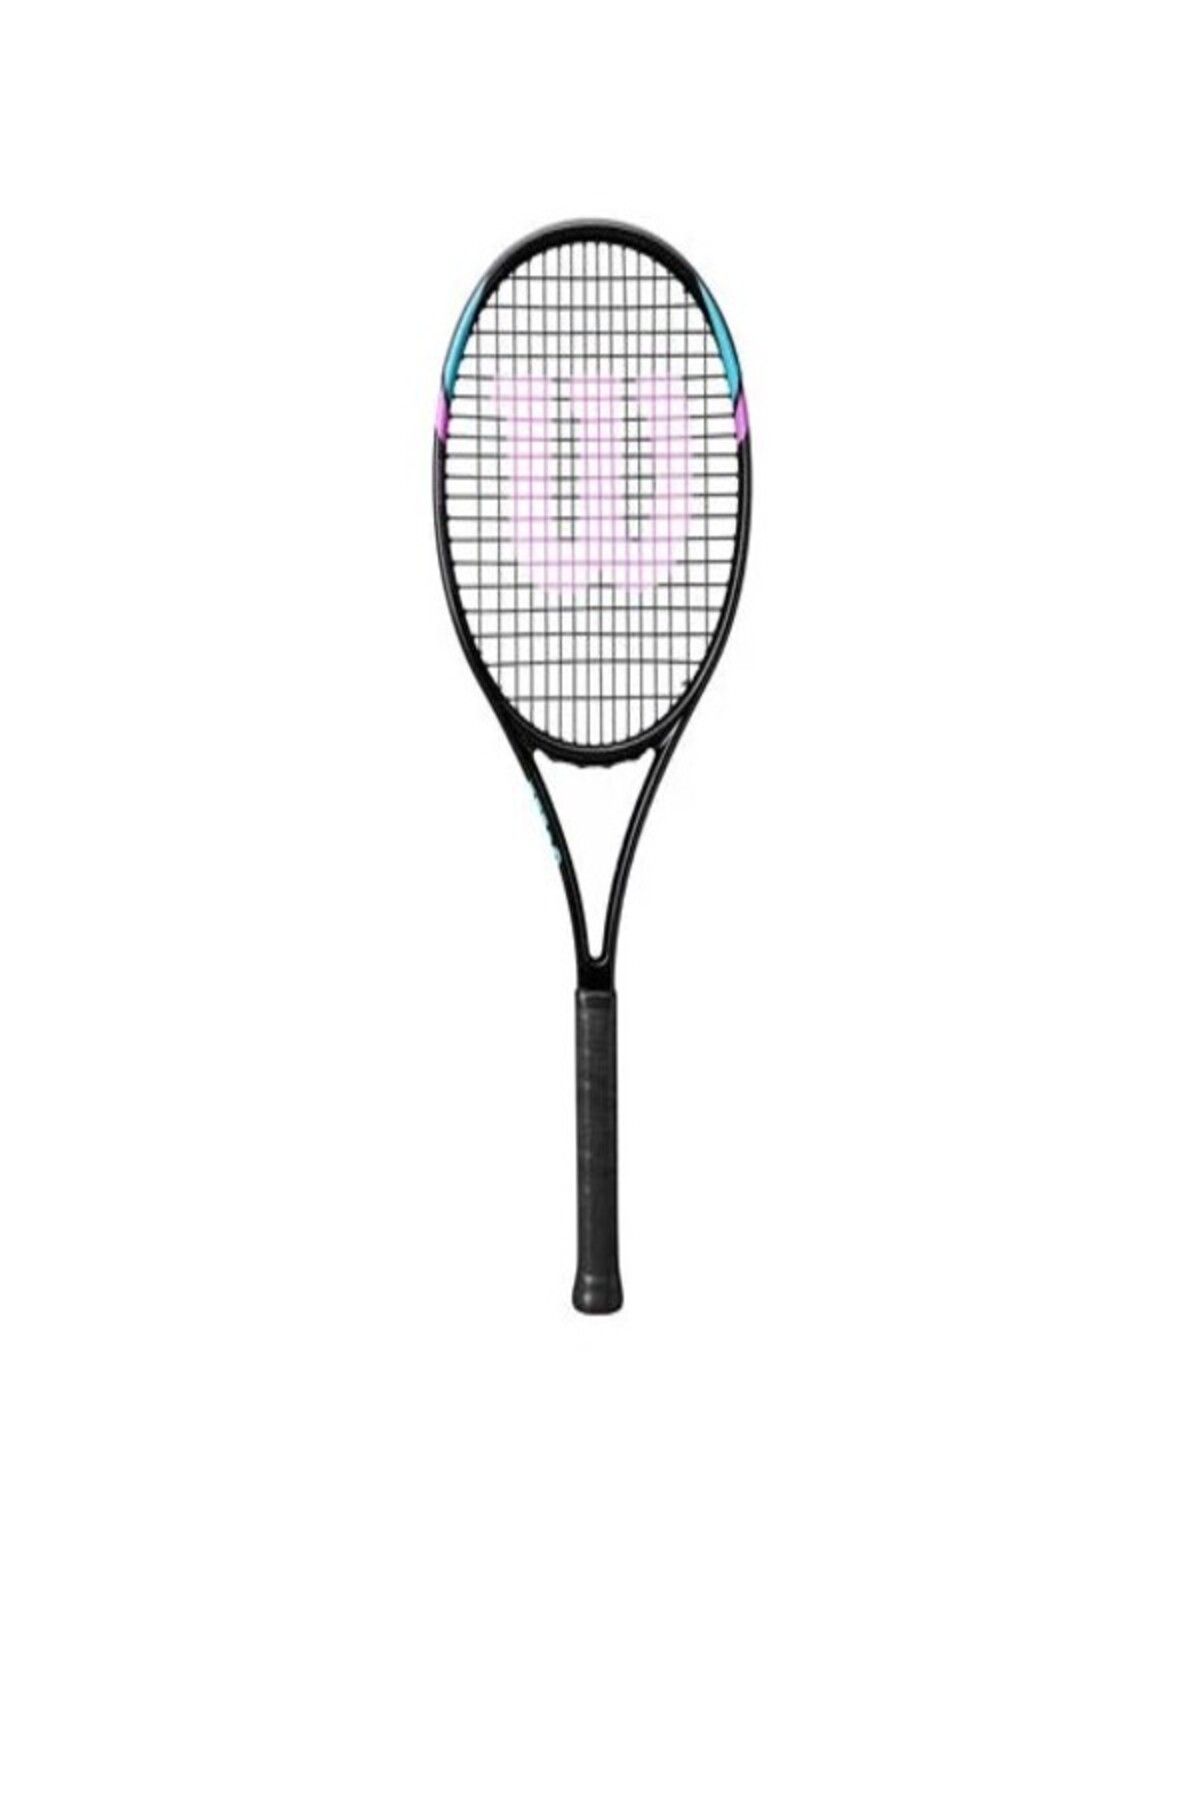 Wilson Altı Lv Tenis  raket (Kordajlı) ÖZEL SÜRÜM